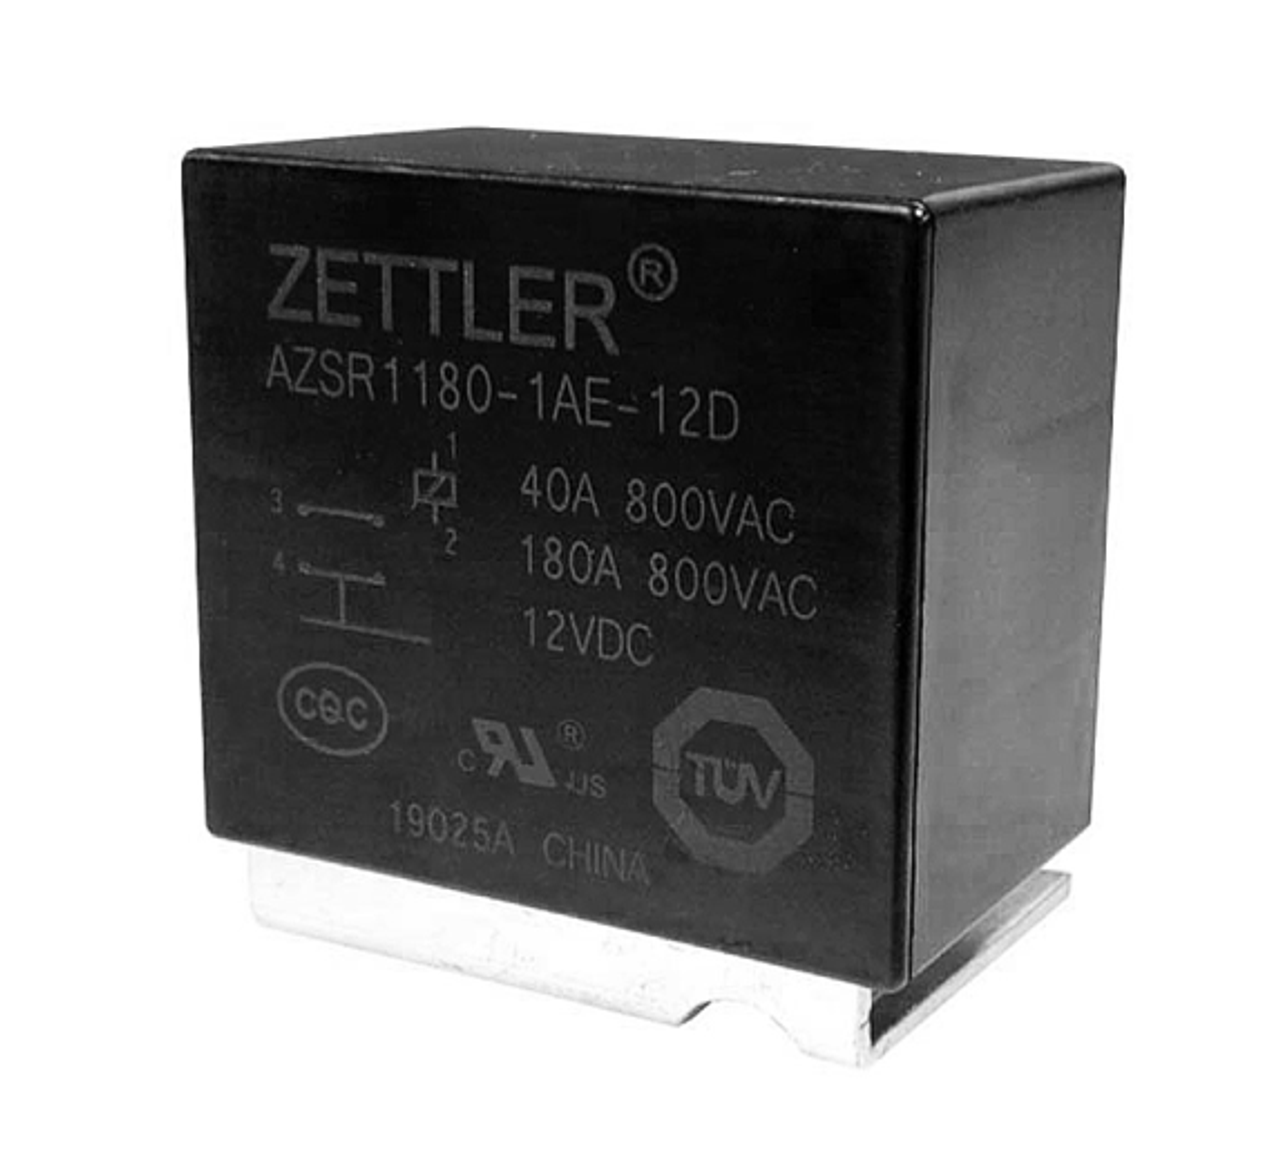 American Zettler AZSR1180-1AE-12D Power Relay